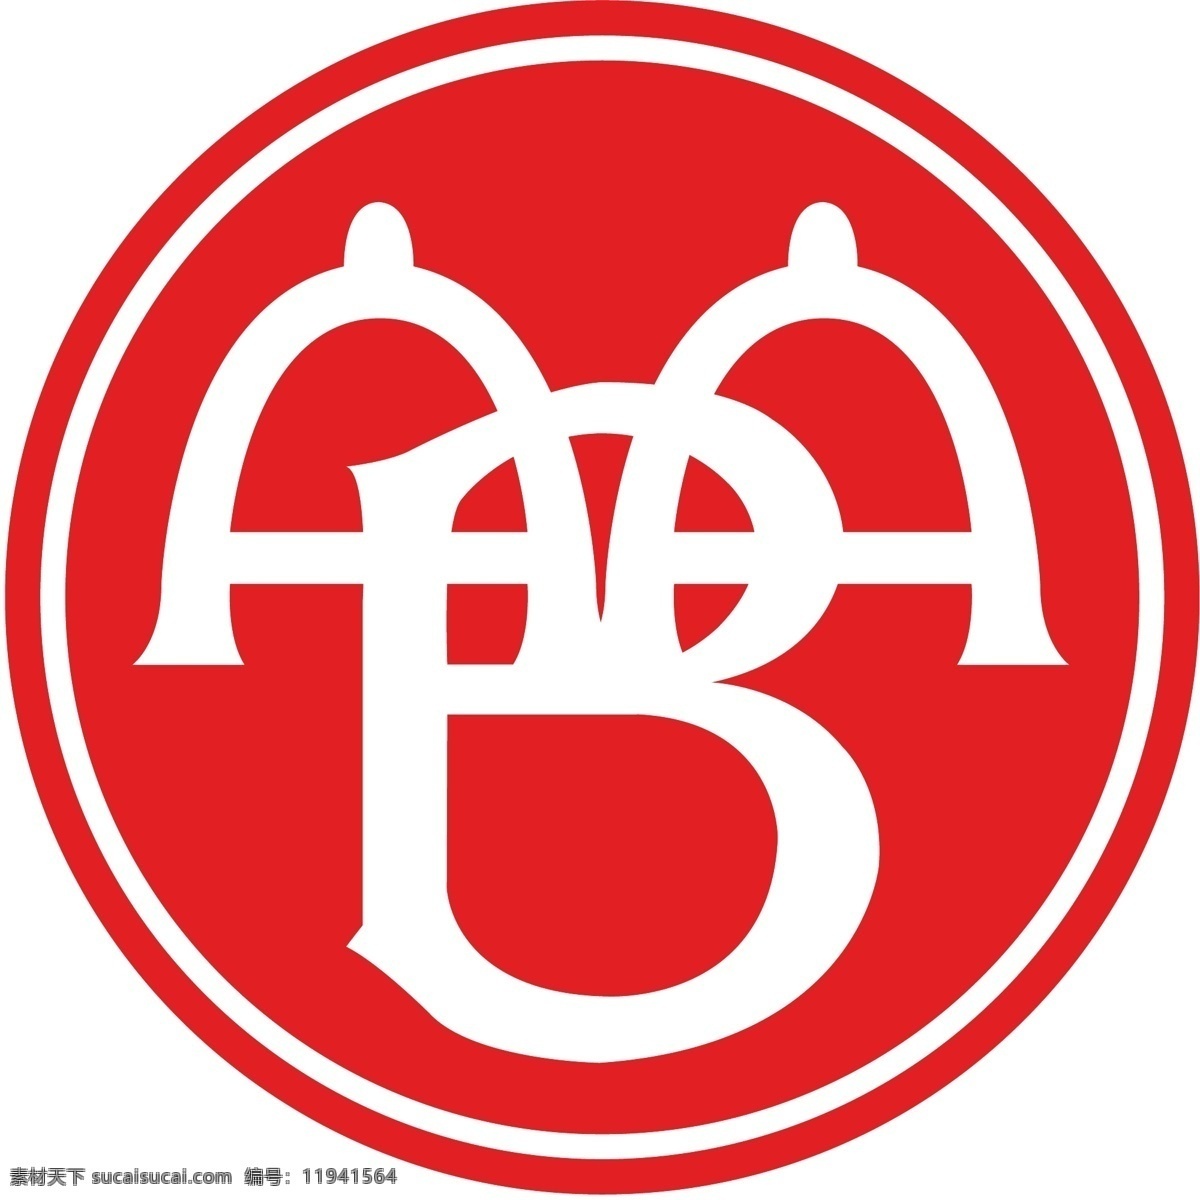 奥尔堡 球类 俱乐部 aab 标志 logo大全 商业矢量 矢量下载 网页矢量 矢量图 其他矢量图